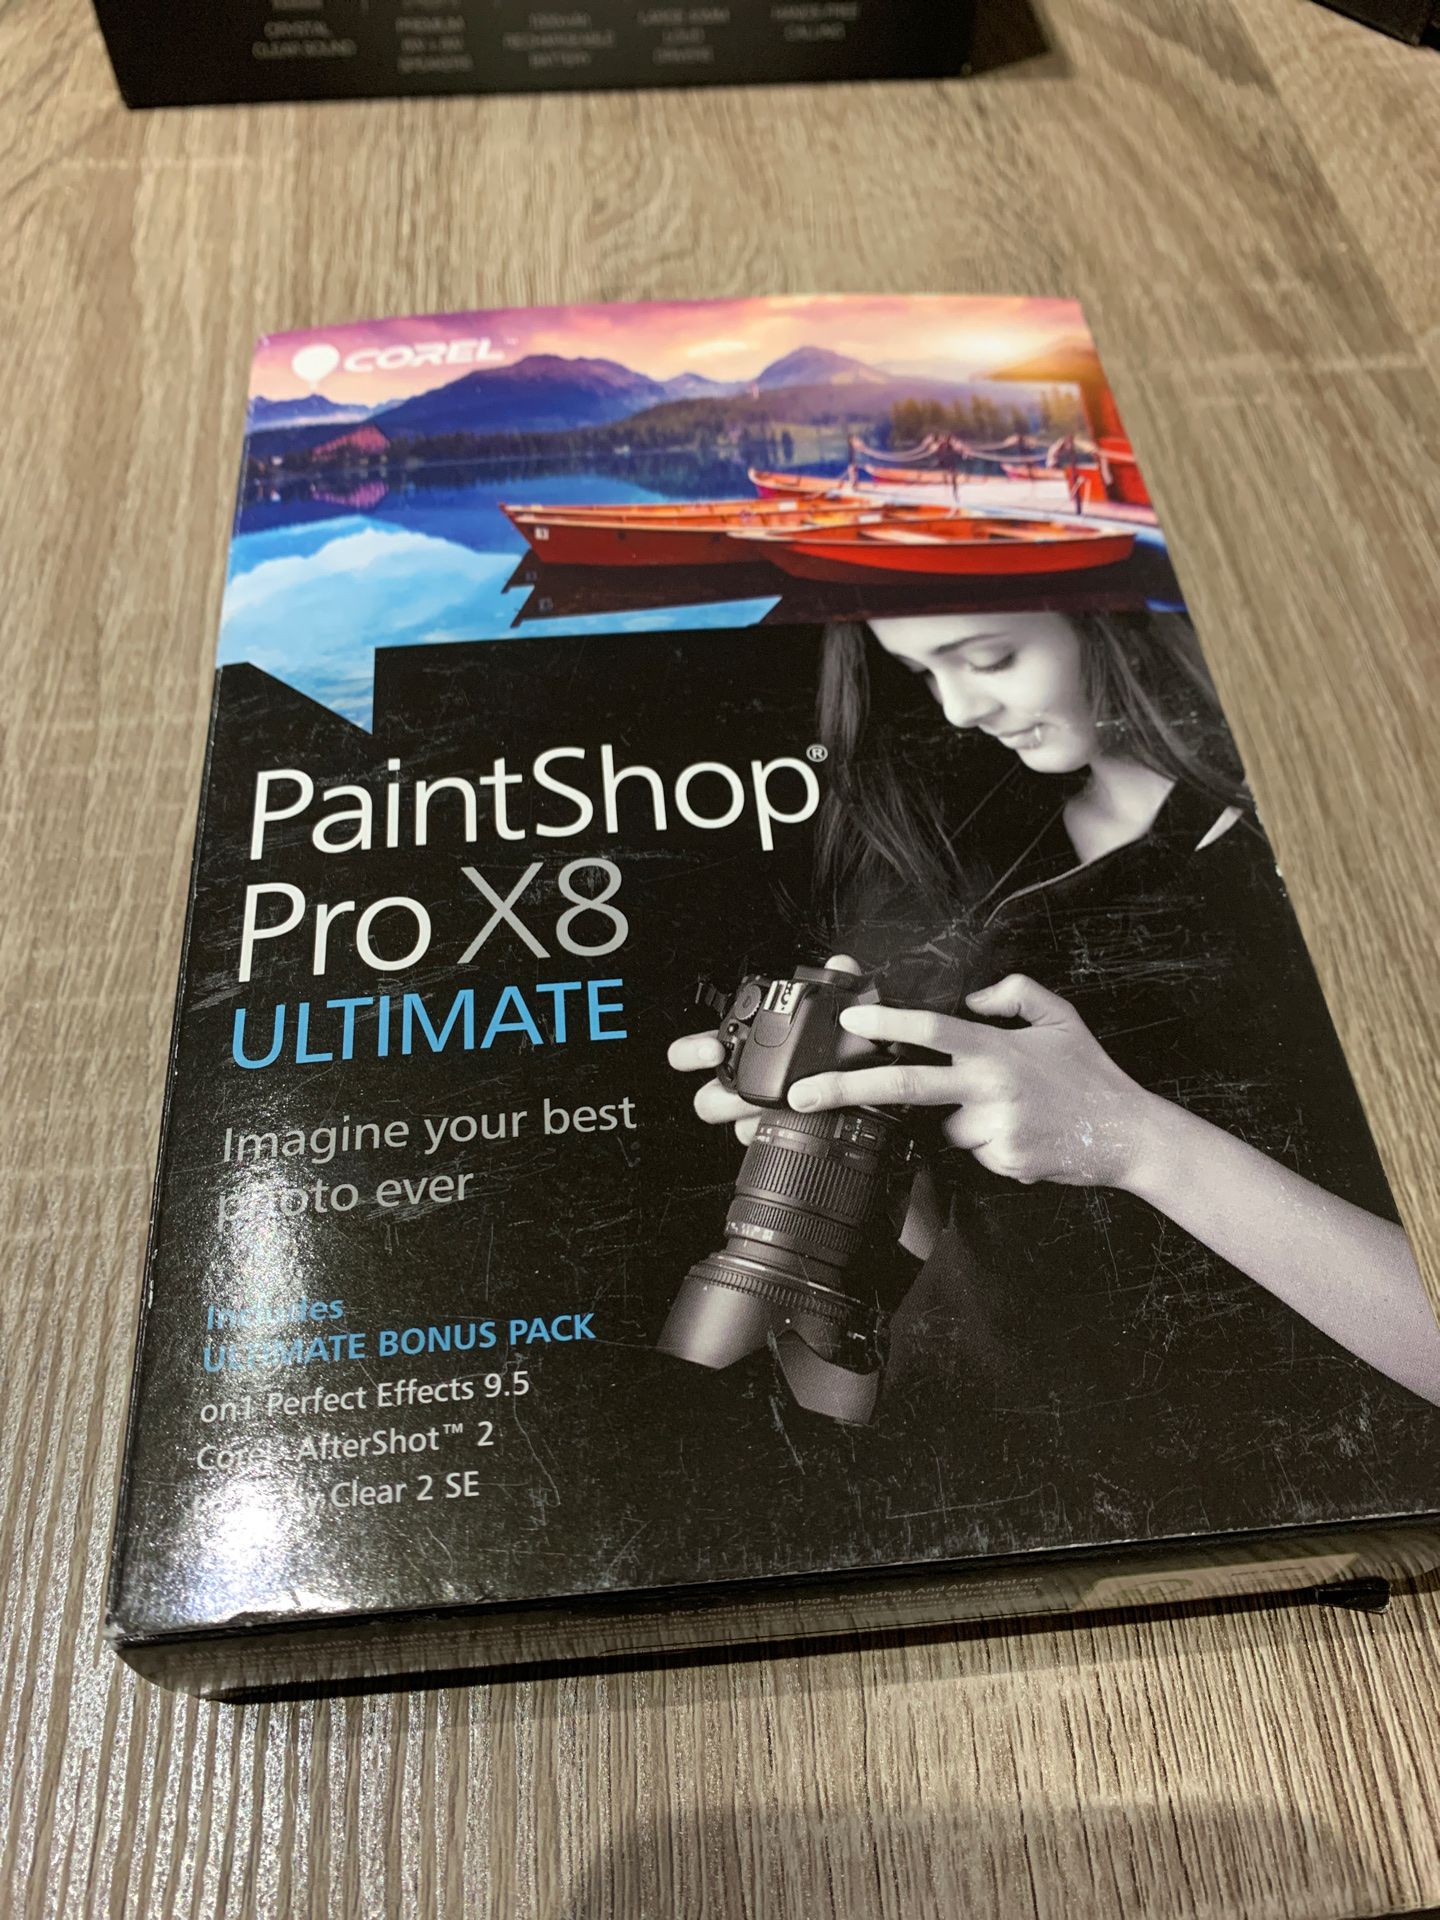 Paint shop pro X8 ultimate